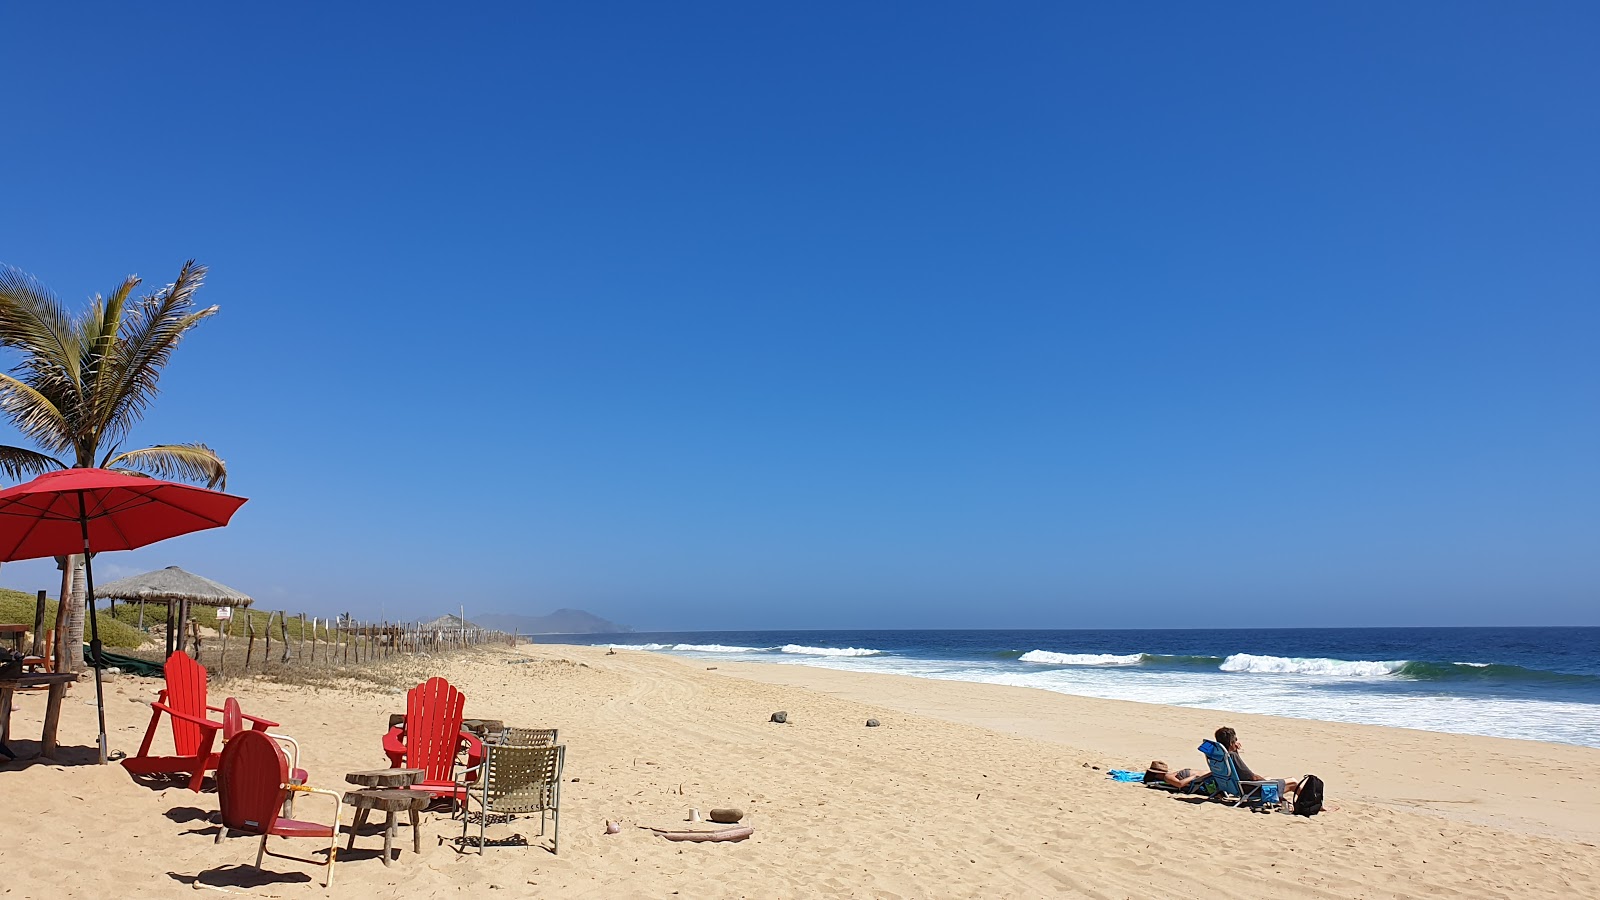 Playa la Pastora'in fotoğrafı i̇nce kahverengi kum yüzey ile